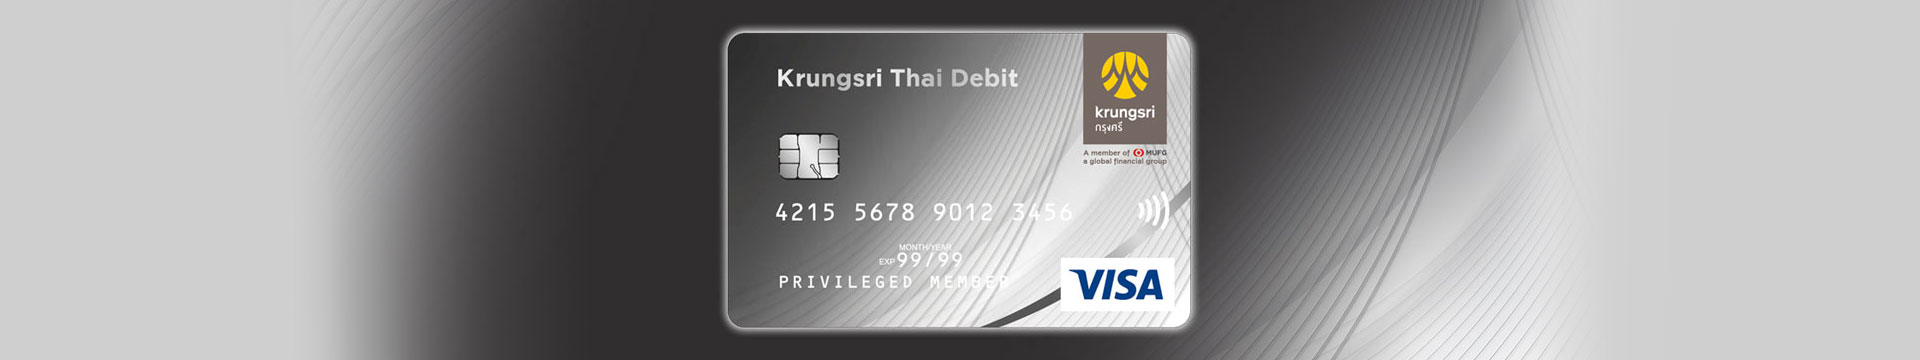 บัตร Krungsri Thai Debit